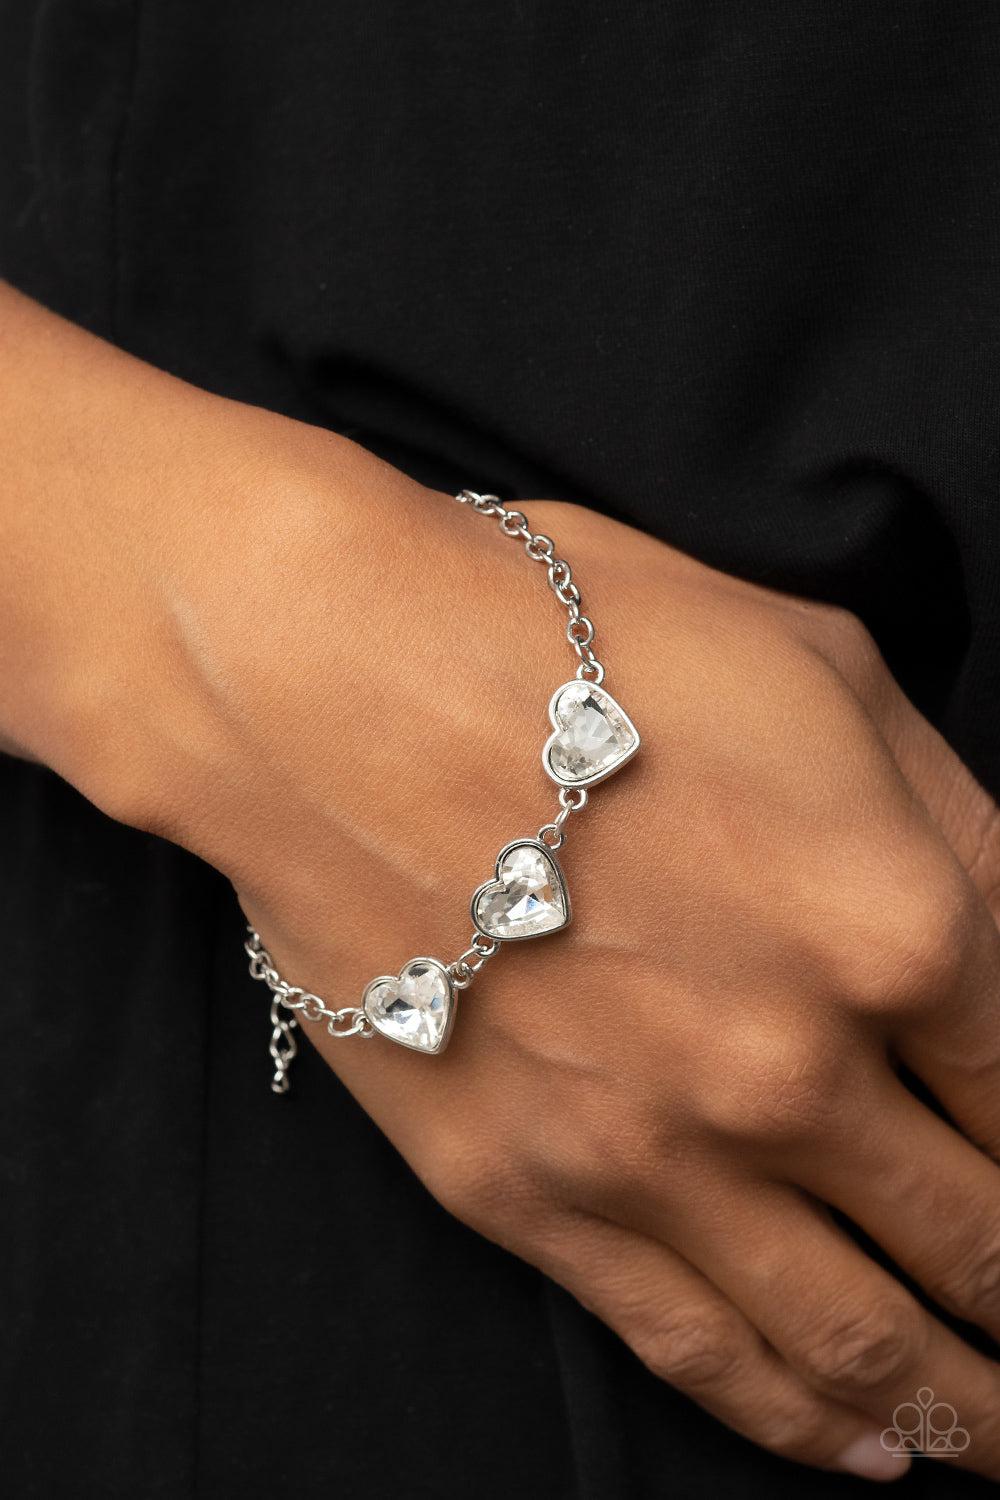 Little Heartbreaker White Rhinestone Heart Bracelet - Paparazzi Accessories- on model - CarasShop.com - $5 Jewelry by Cara Jewels